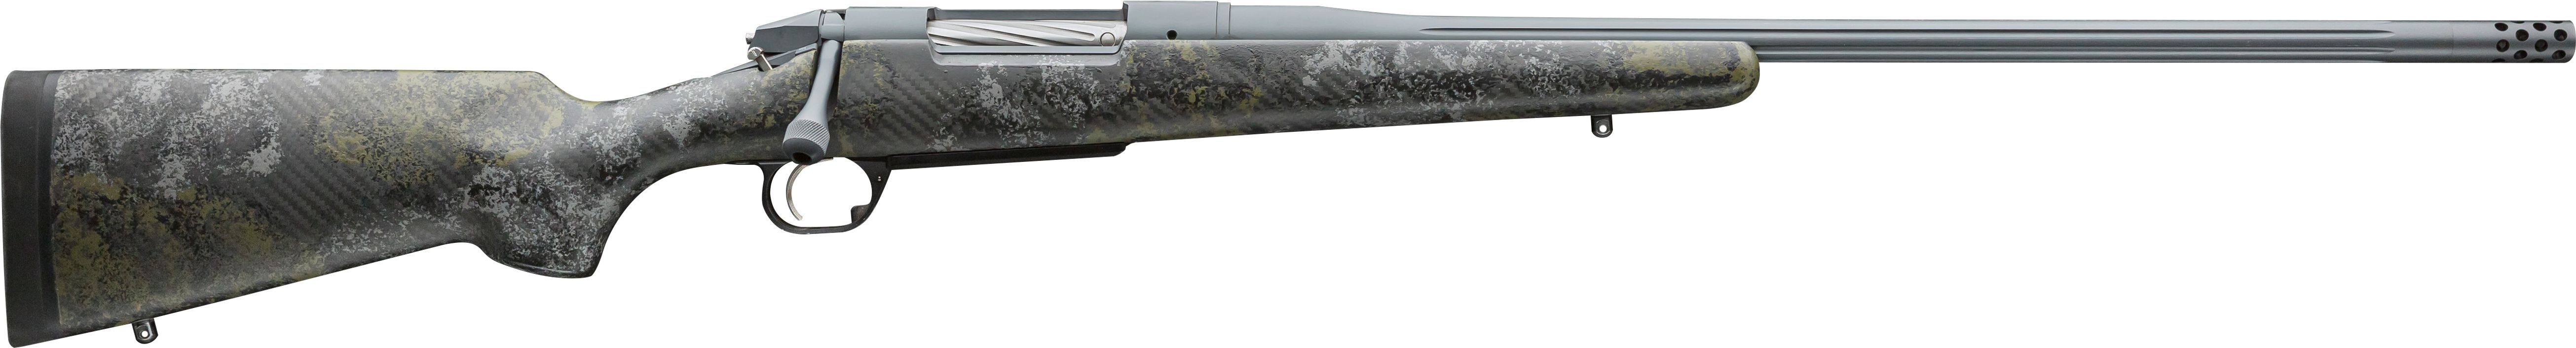 Canyon Rifle 1.jpeg